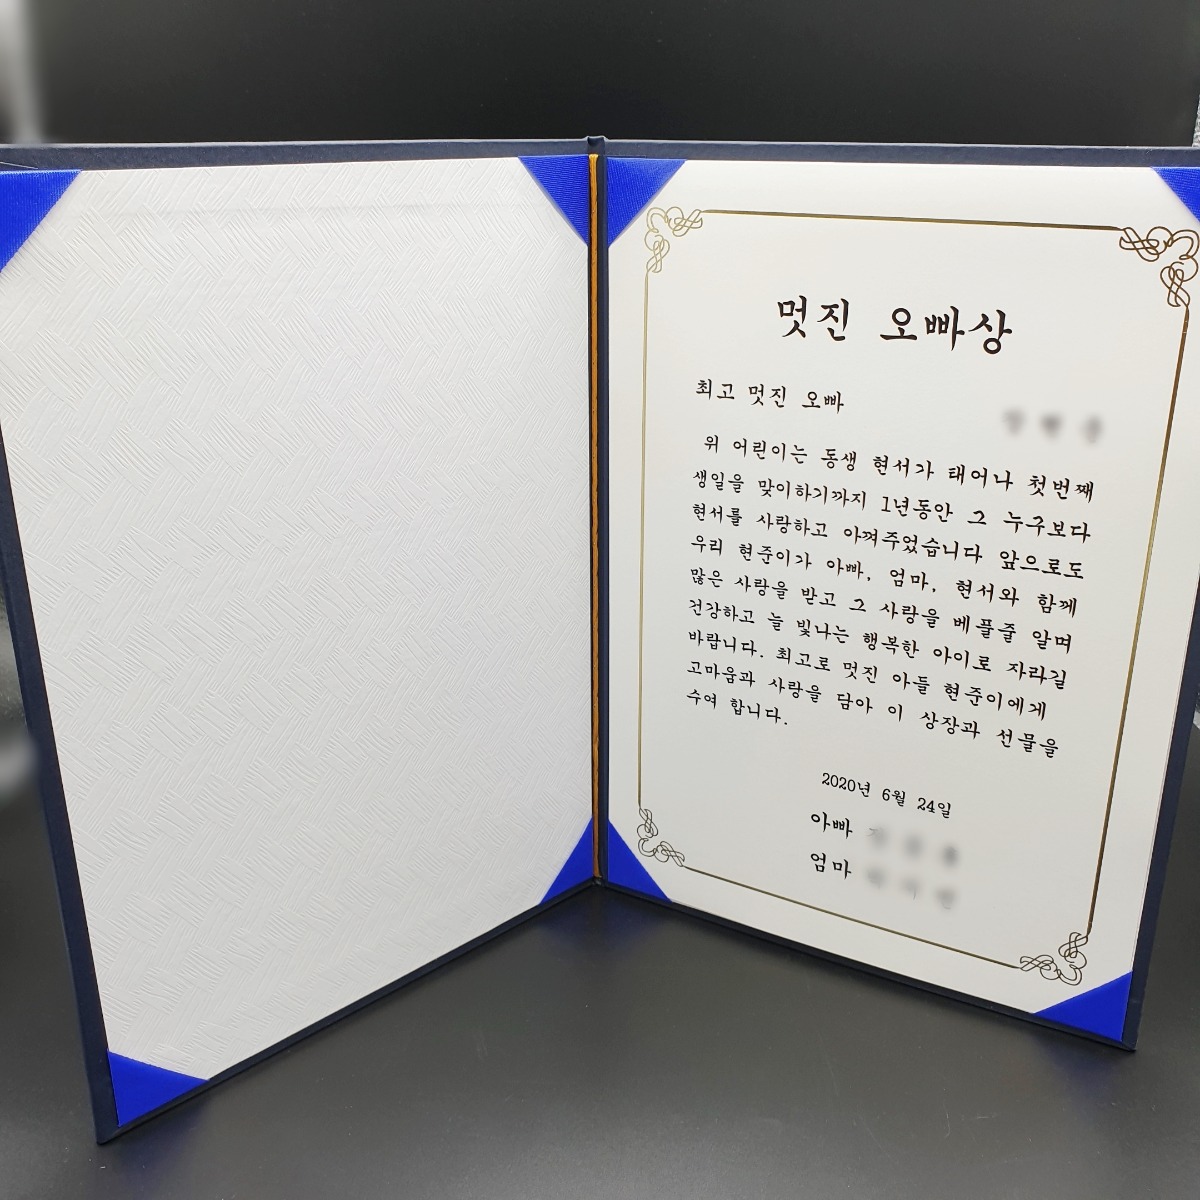 멋진오빠상 상장 제작 어린이날 선물 가족상 동생상 재밌는상장 소량 인쇄 45